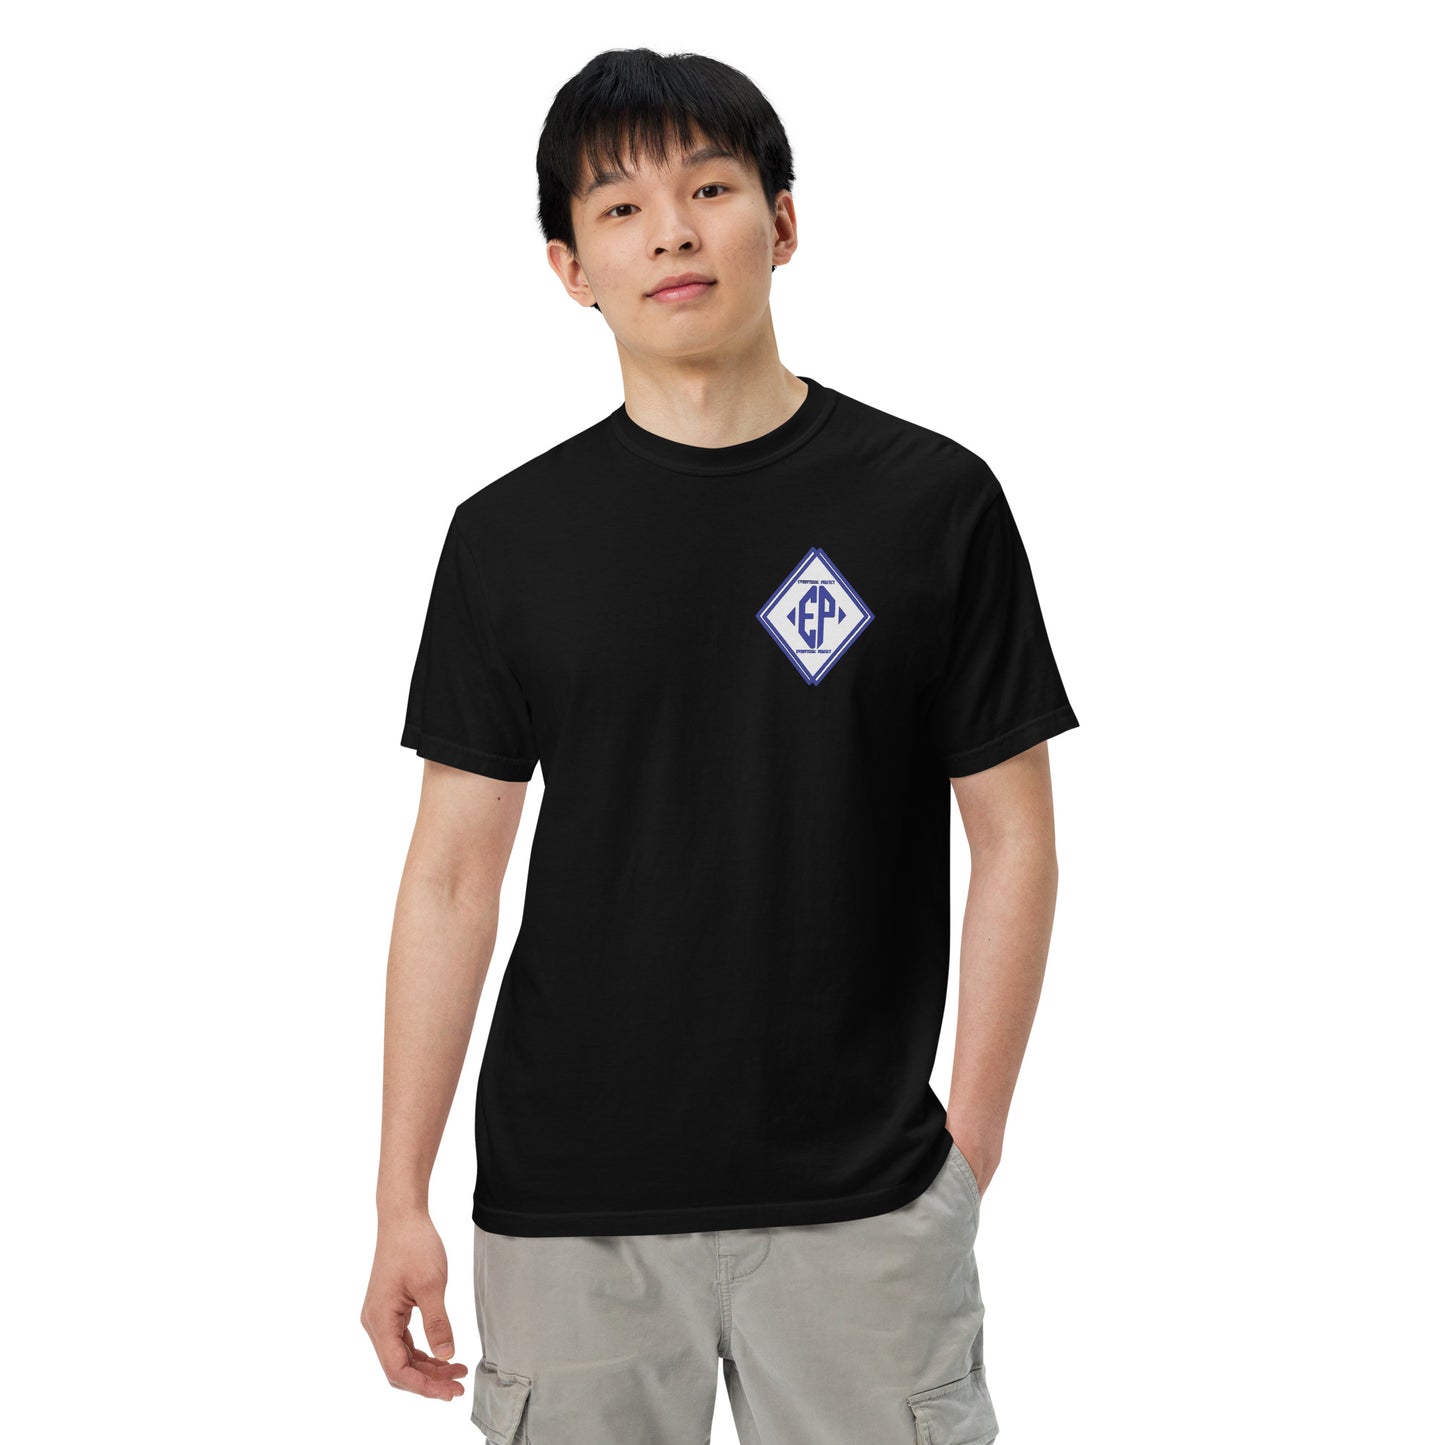 Men’s EP garment heavyweight t-shirt